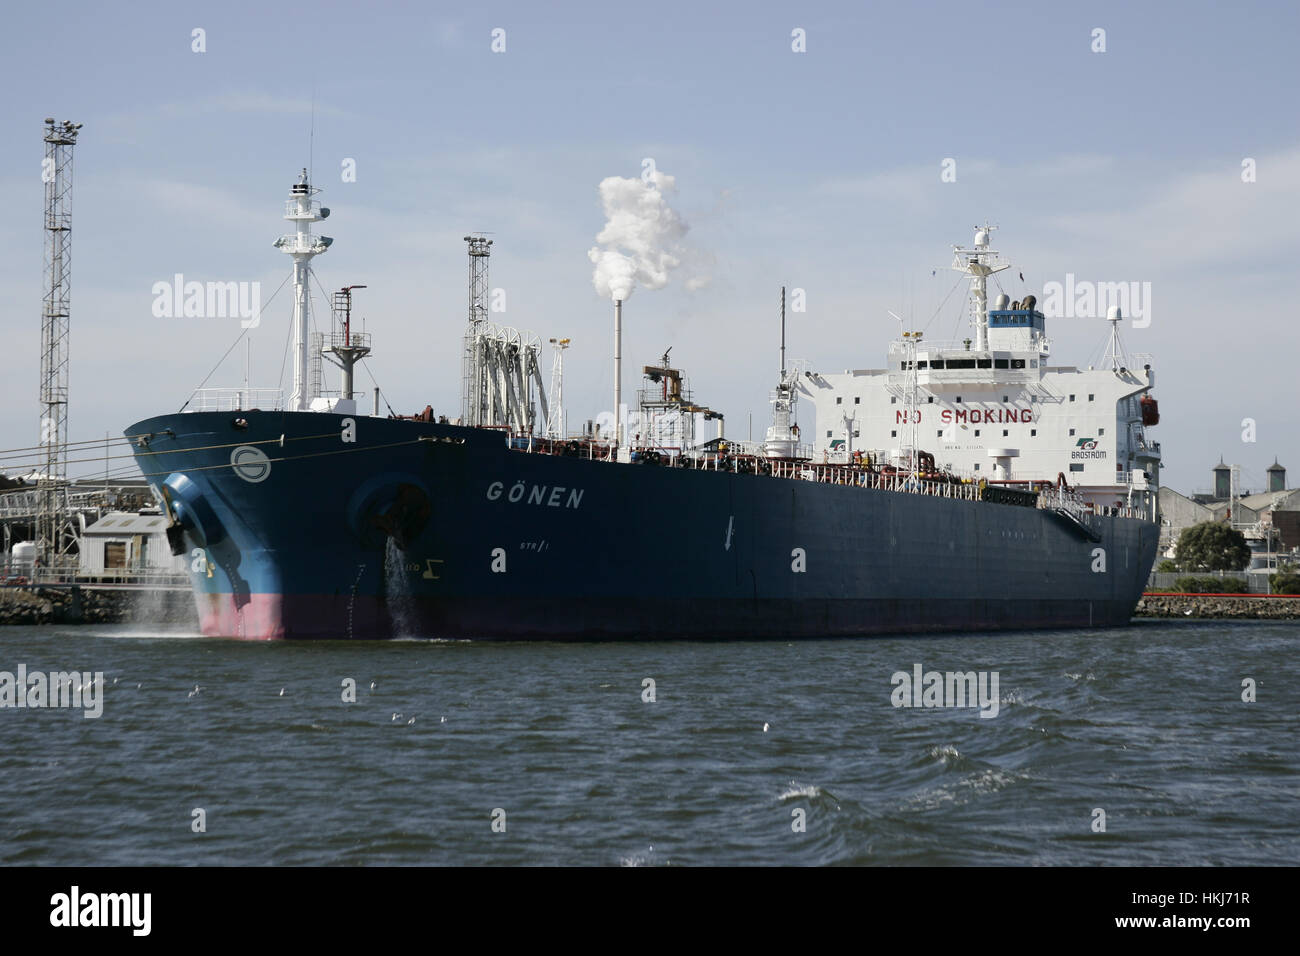 Oiltanker Goenen in port. Australia, Victoria, Melbourne Stock Photo